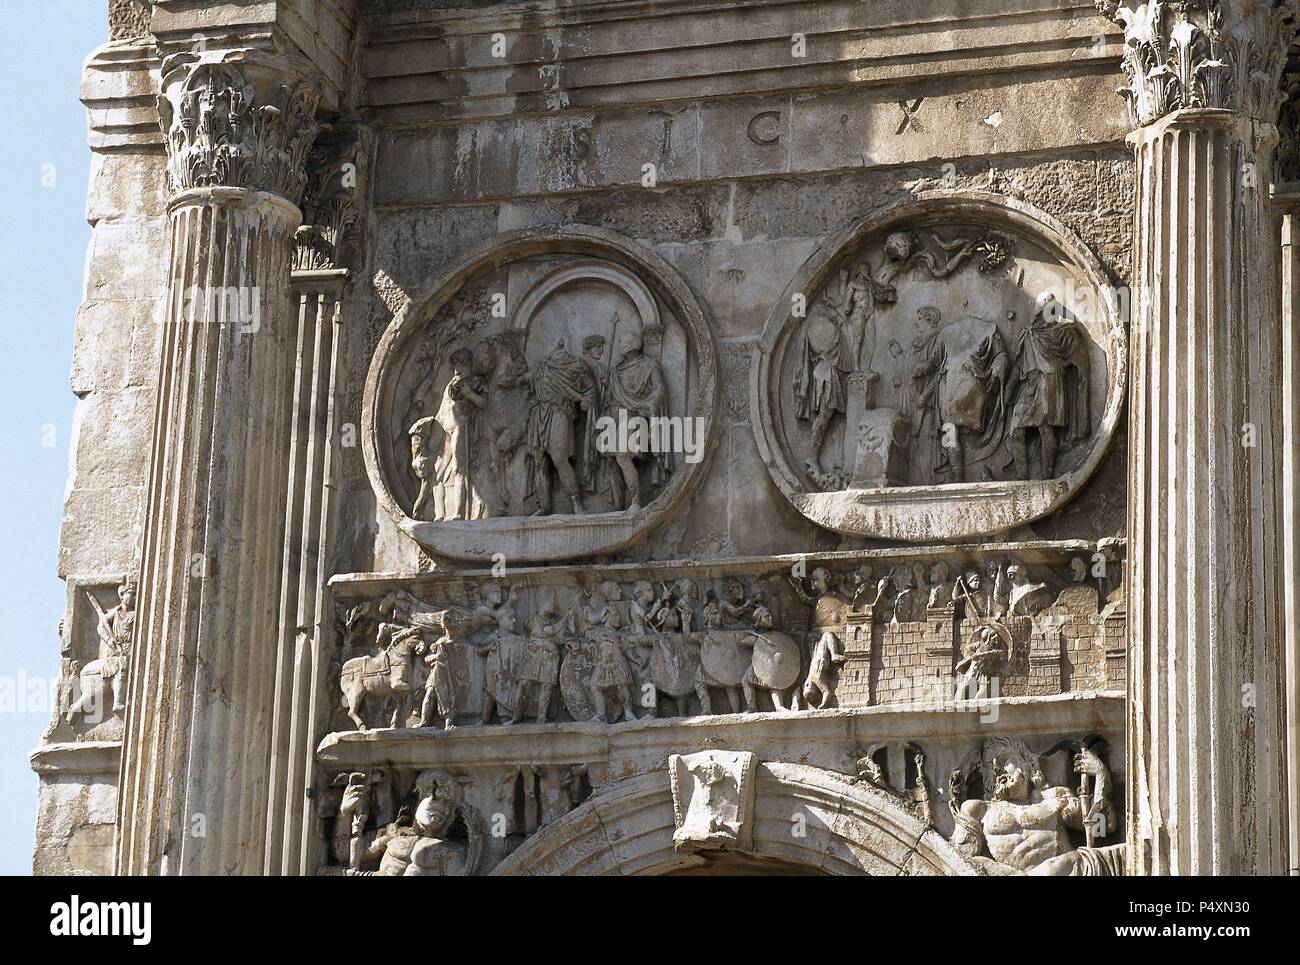 ARTE ROMANO. ITALIA. ARCO DE CONSTANTINO. Arco triunfal erigido en el siglo IV d. C. por el Senado en honor del emperador Constantino, tras su victoria sobre Majencio en Puente Milvio (año 313 d. C.). Tiene tres oberturas y gran parte de su decoración procede de otros monumentos. Detalle de los MEDALLONES. ROMA. Stock Photo